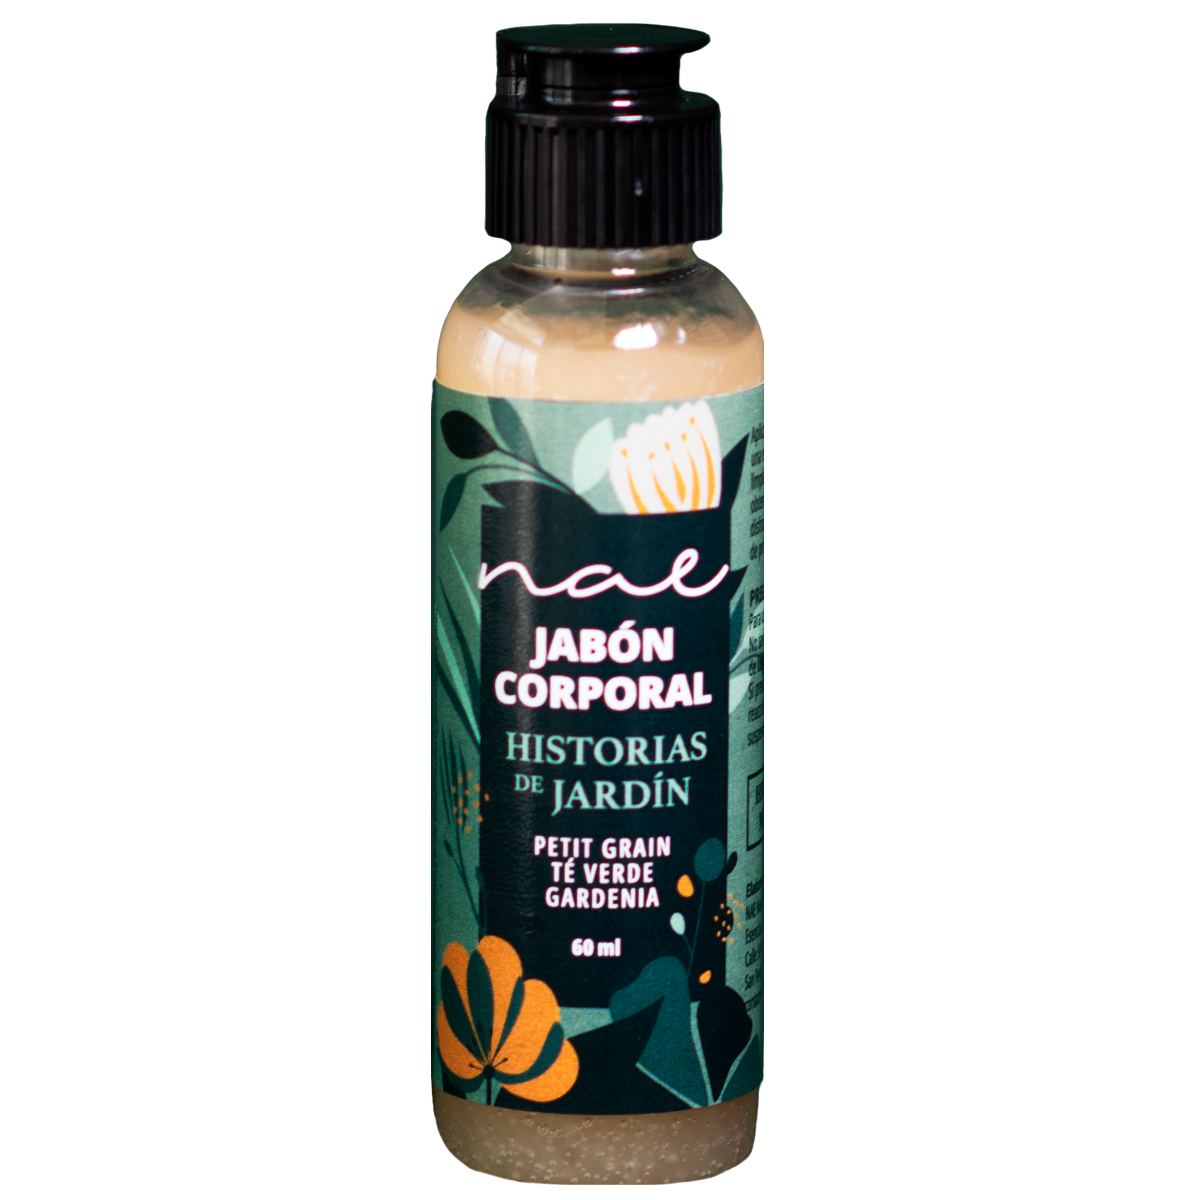 Jabón líquido corporal con aceites esenciales Historias de jardín Petit grain, té verde, gardenia